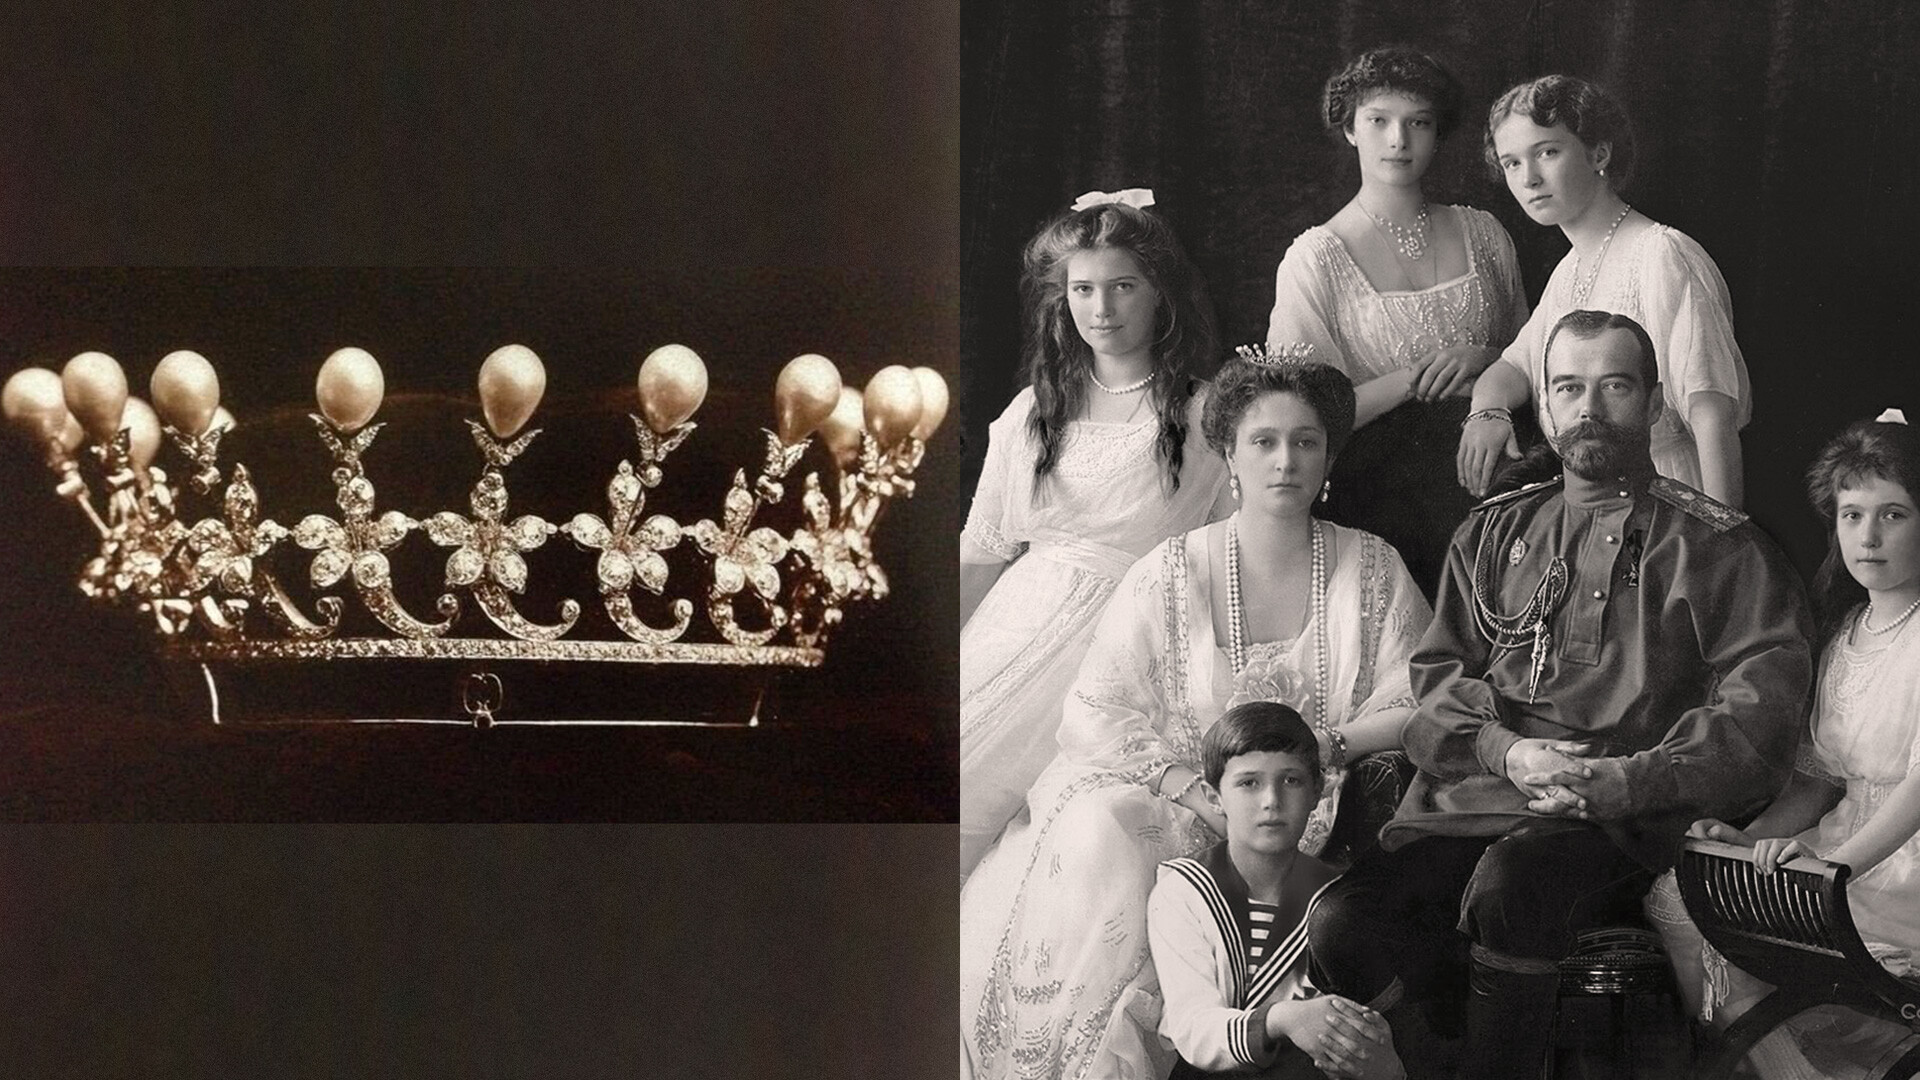 Family photos of the last Romanovs, 1913.